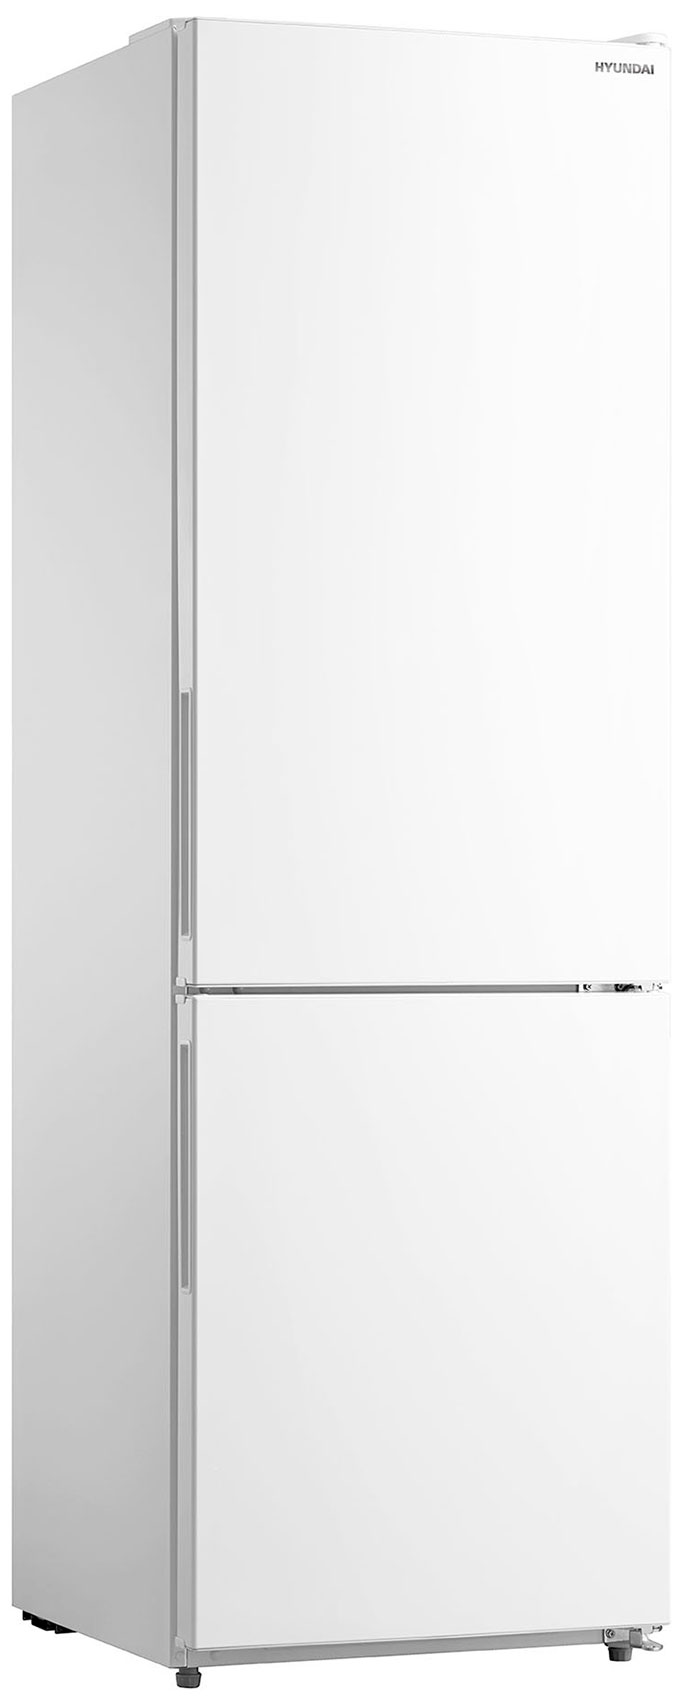 Двухкамерный холодильник Hyundai CC3093FWT белый двухкамерный холодильник hyundai cc3093fwt белый